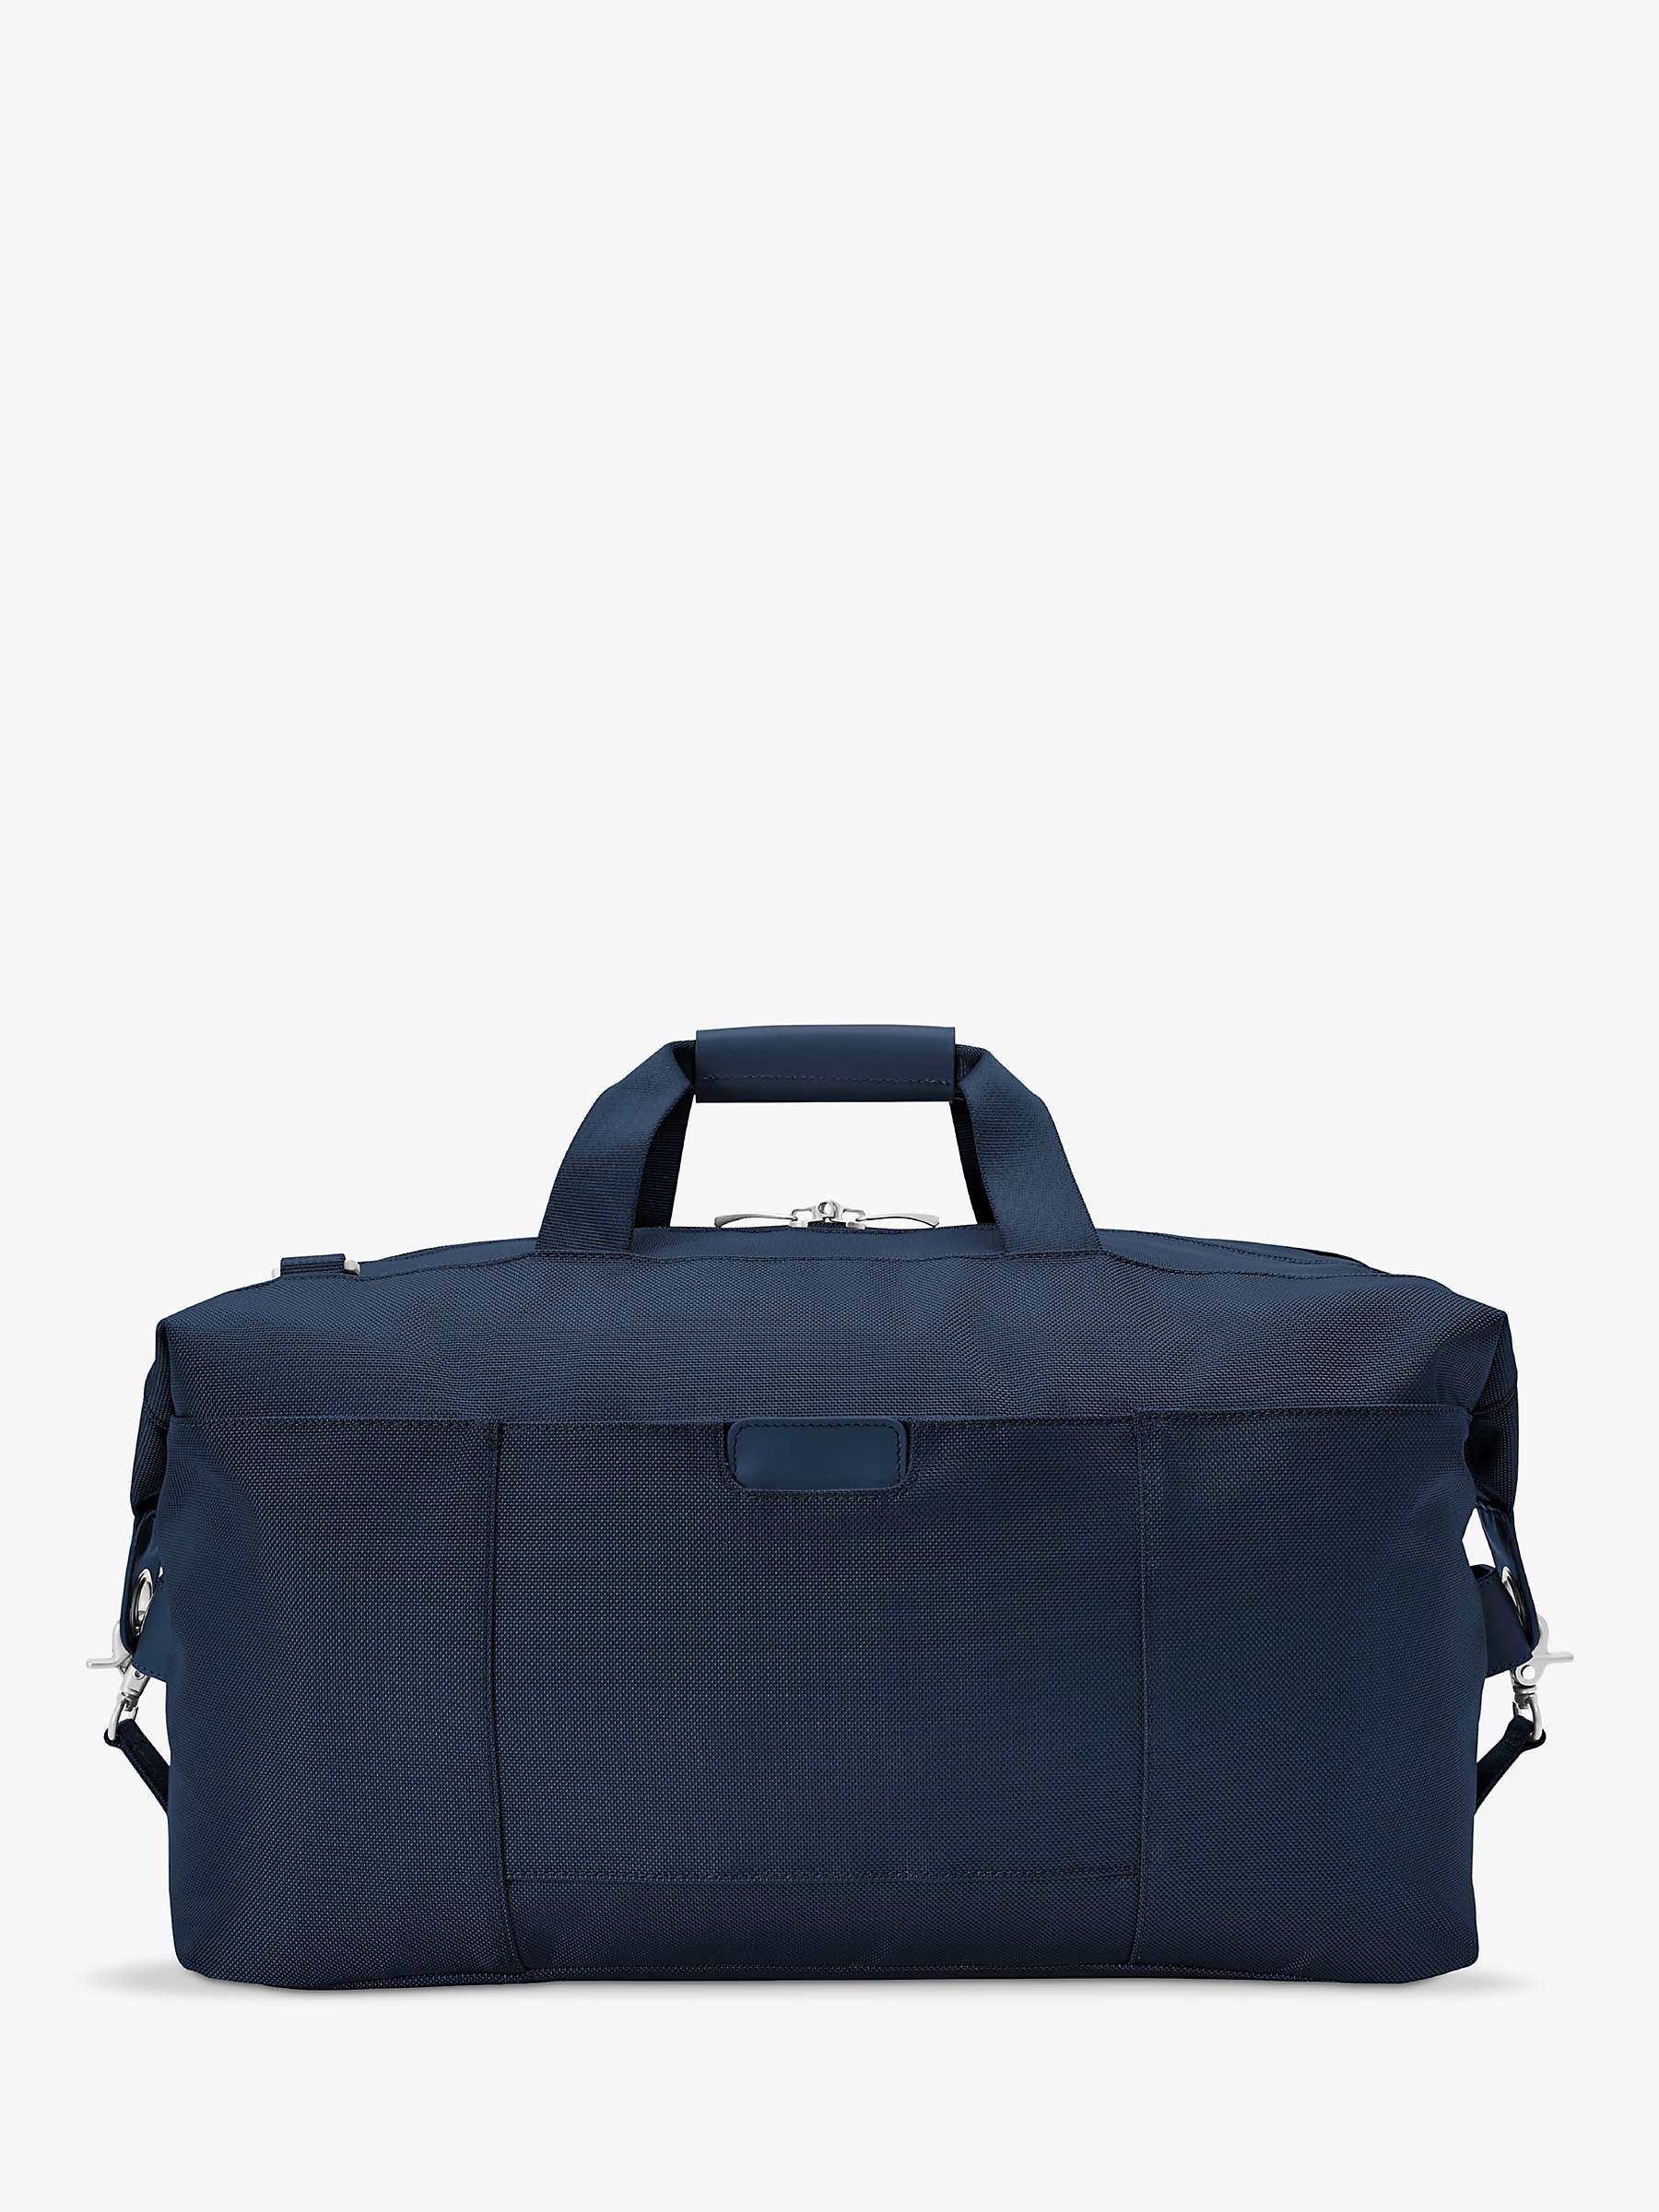 Buy Briggs & Riley Baseline Weekender Duffle Bag Online at johnlewis.com